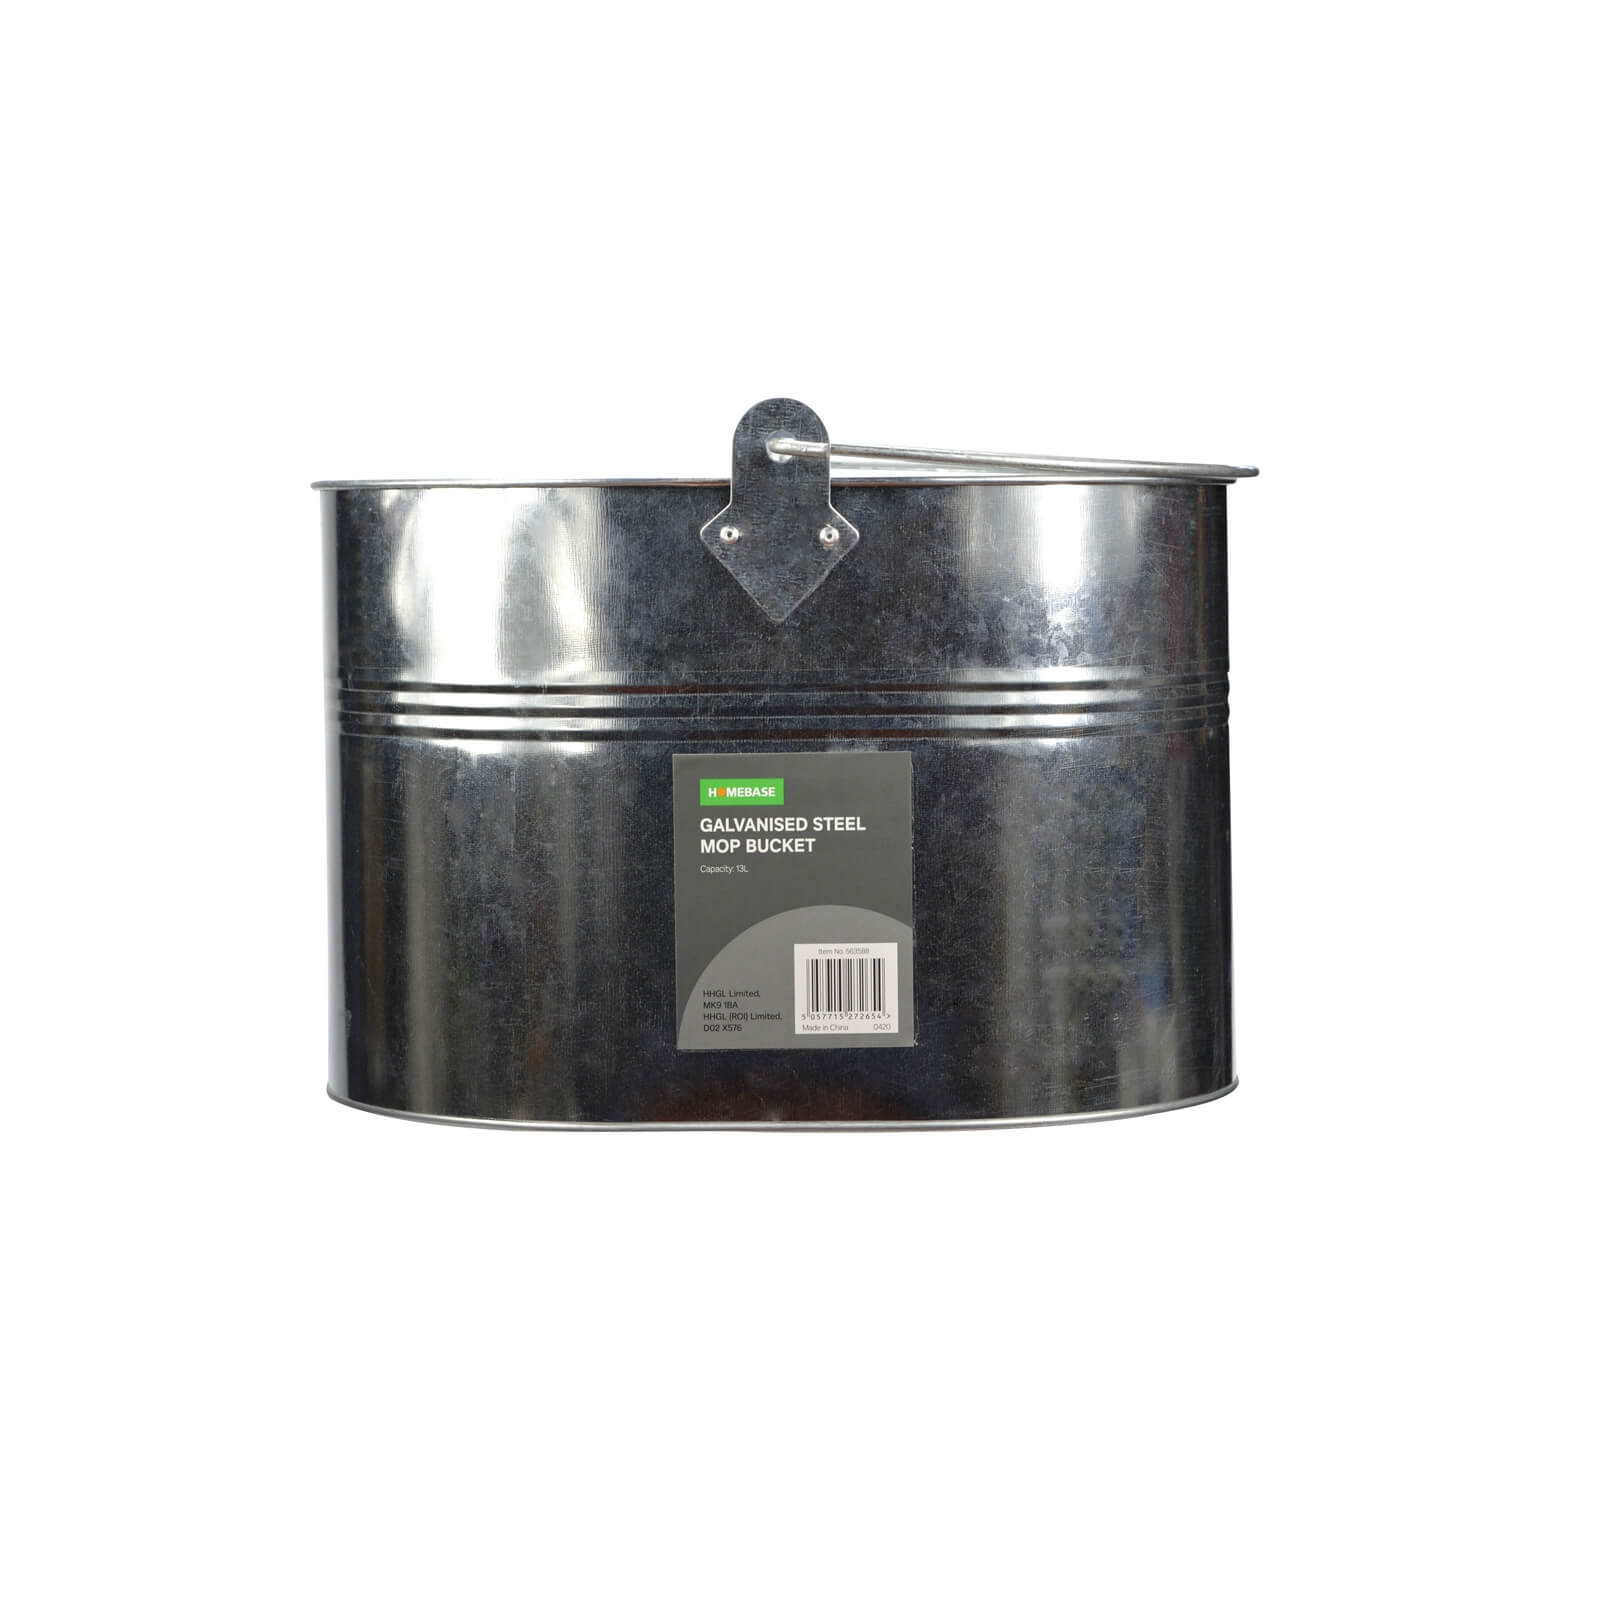 Galvanised Steel Mop Bucket